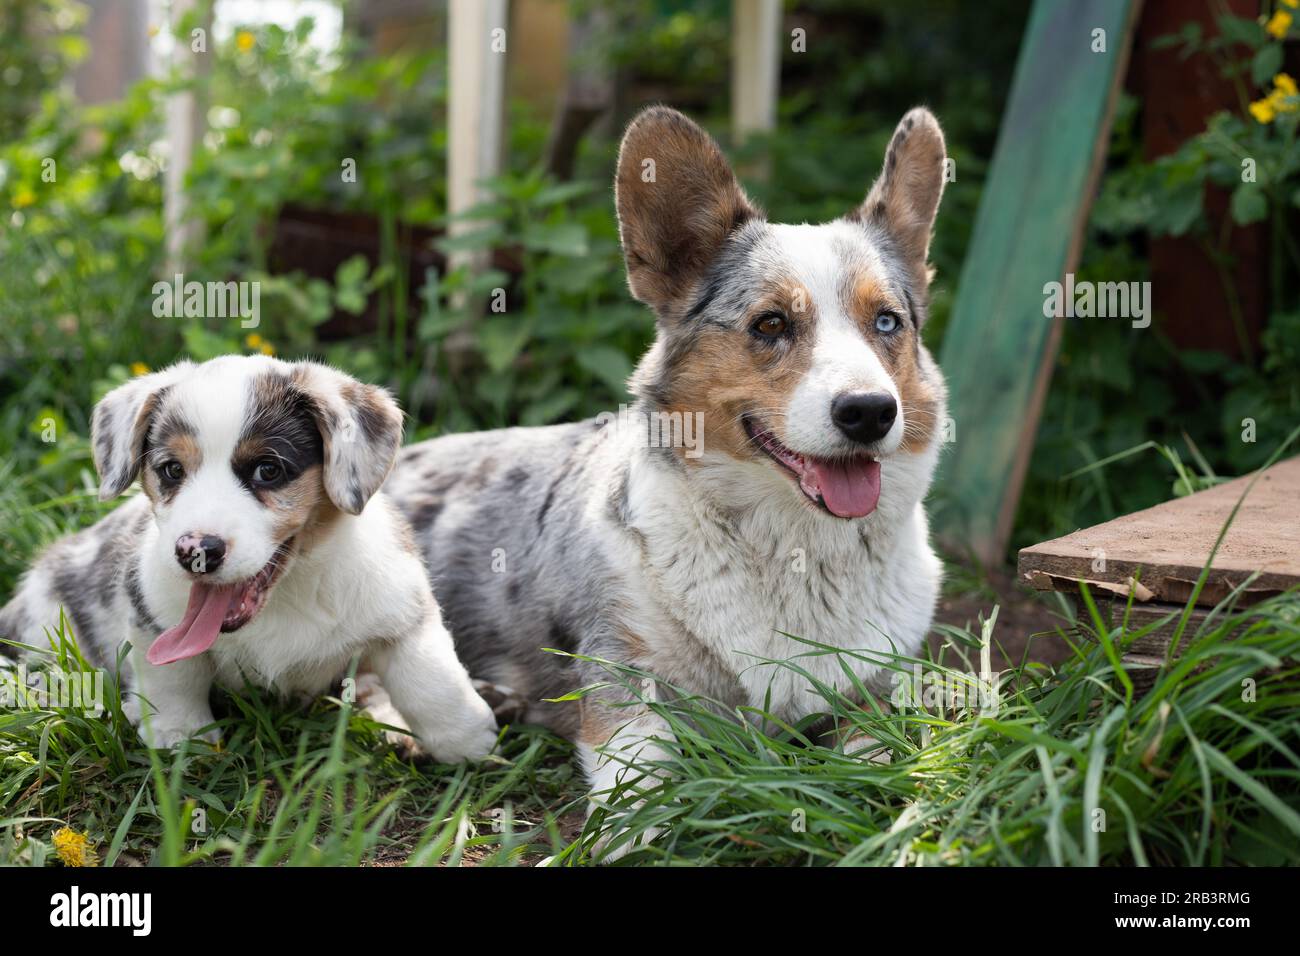 Cucciolo cardigan in marmo con corgi che gioca in erba con la mamma Foto Stock